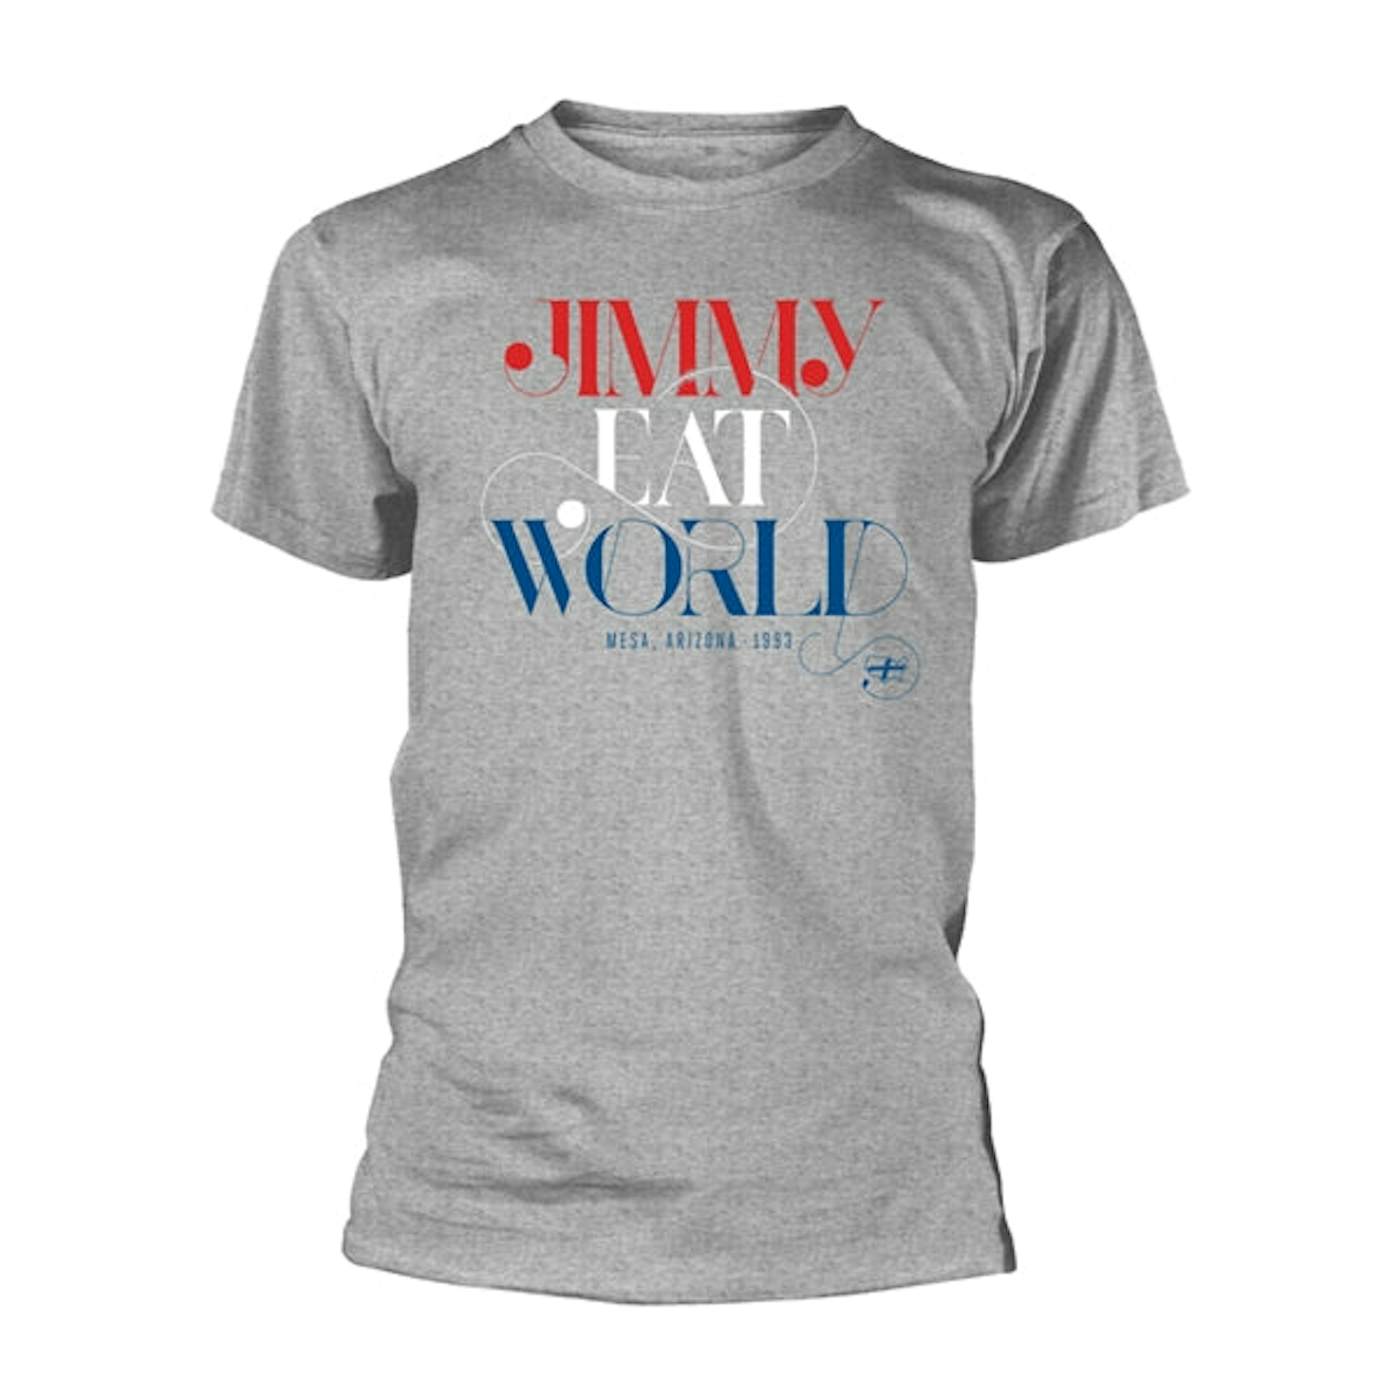 Jimmy Eat World T-Shirt - Swoop